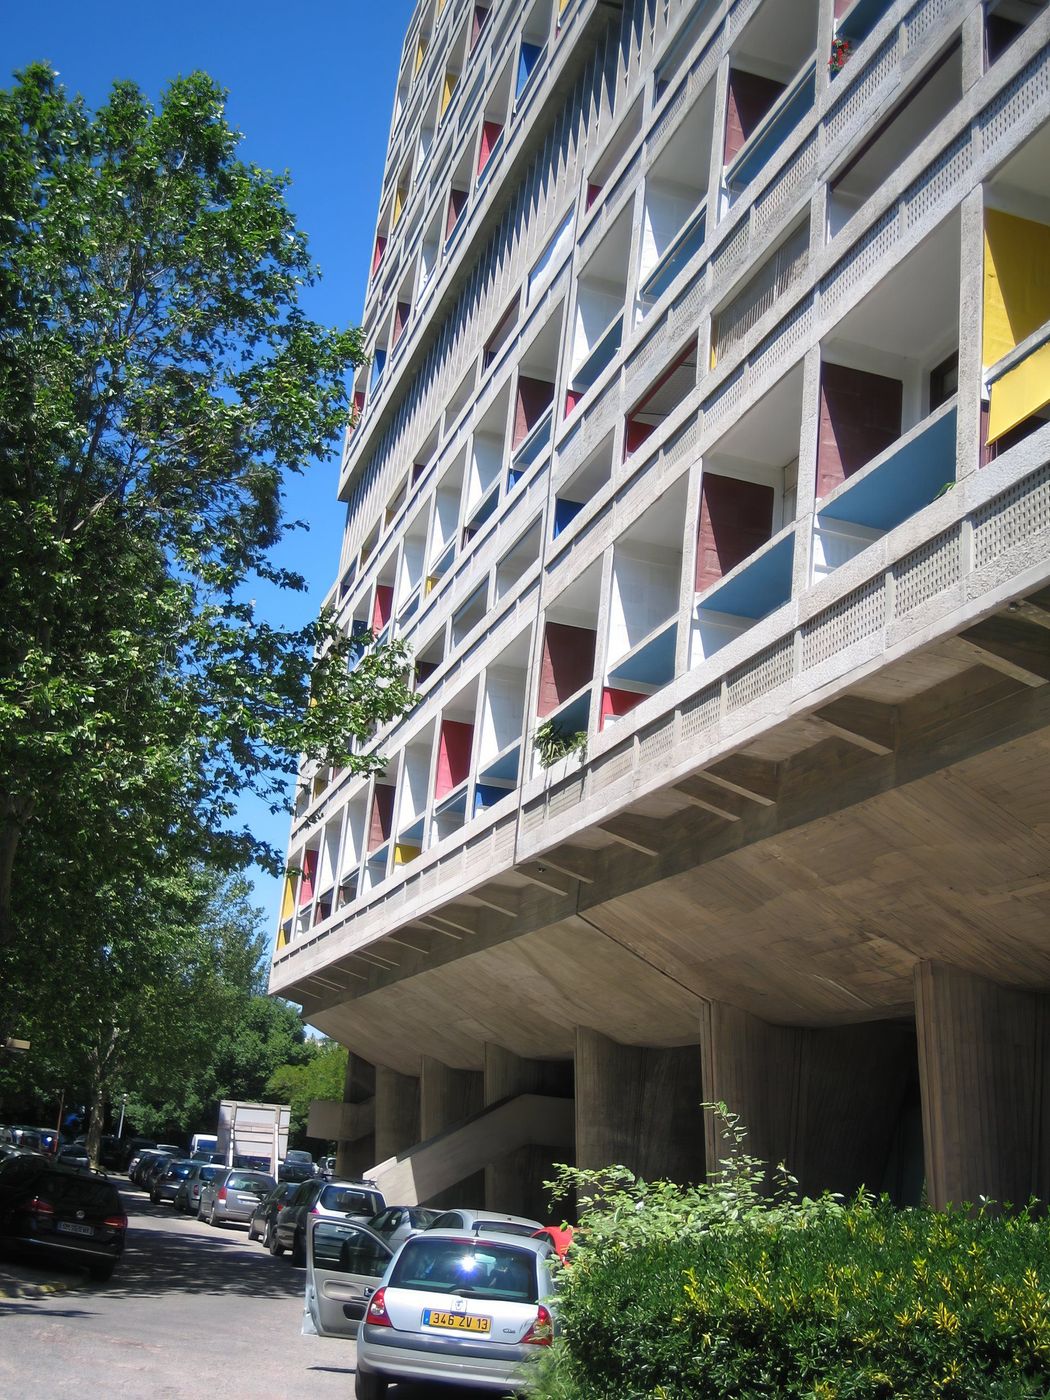 Cité radieuse de Le Corbusier